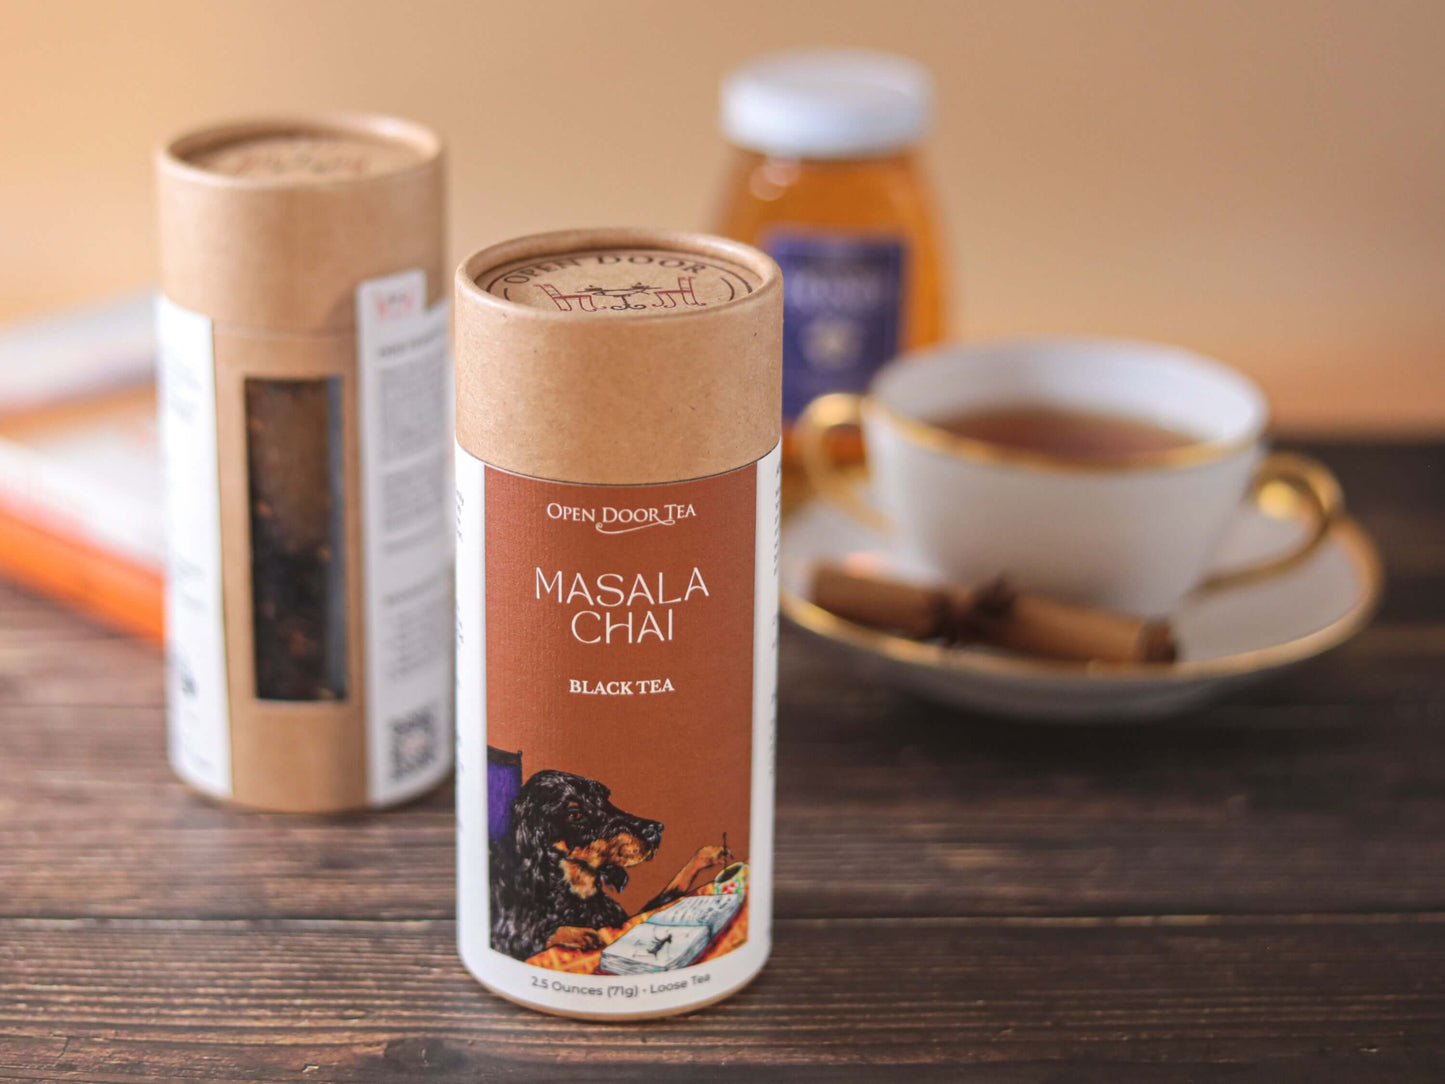 Masala Chai by Open Door Tea